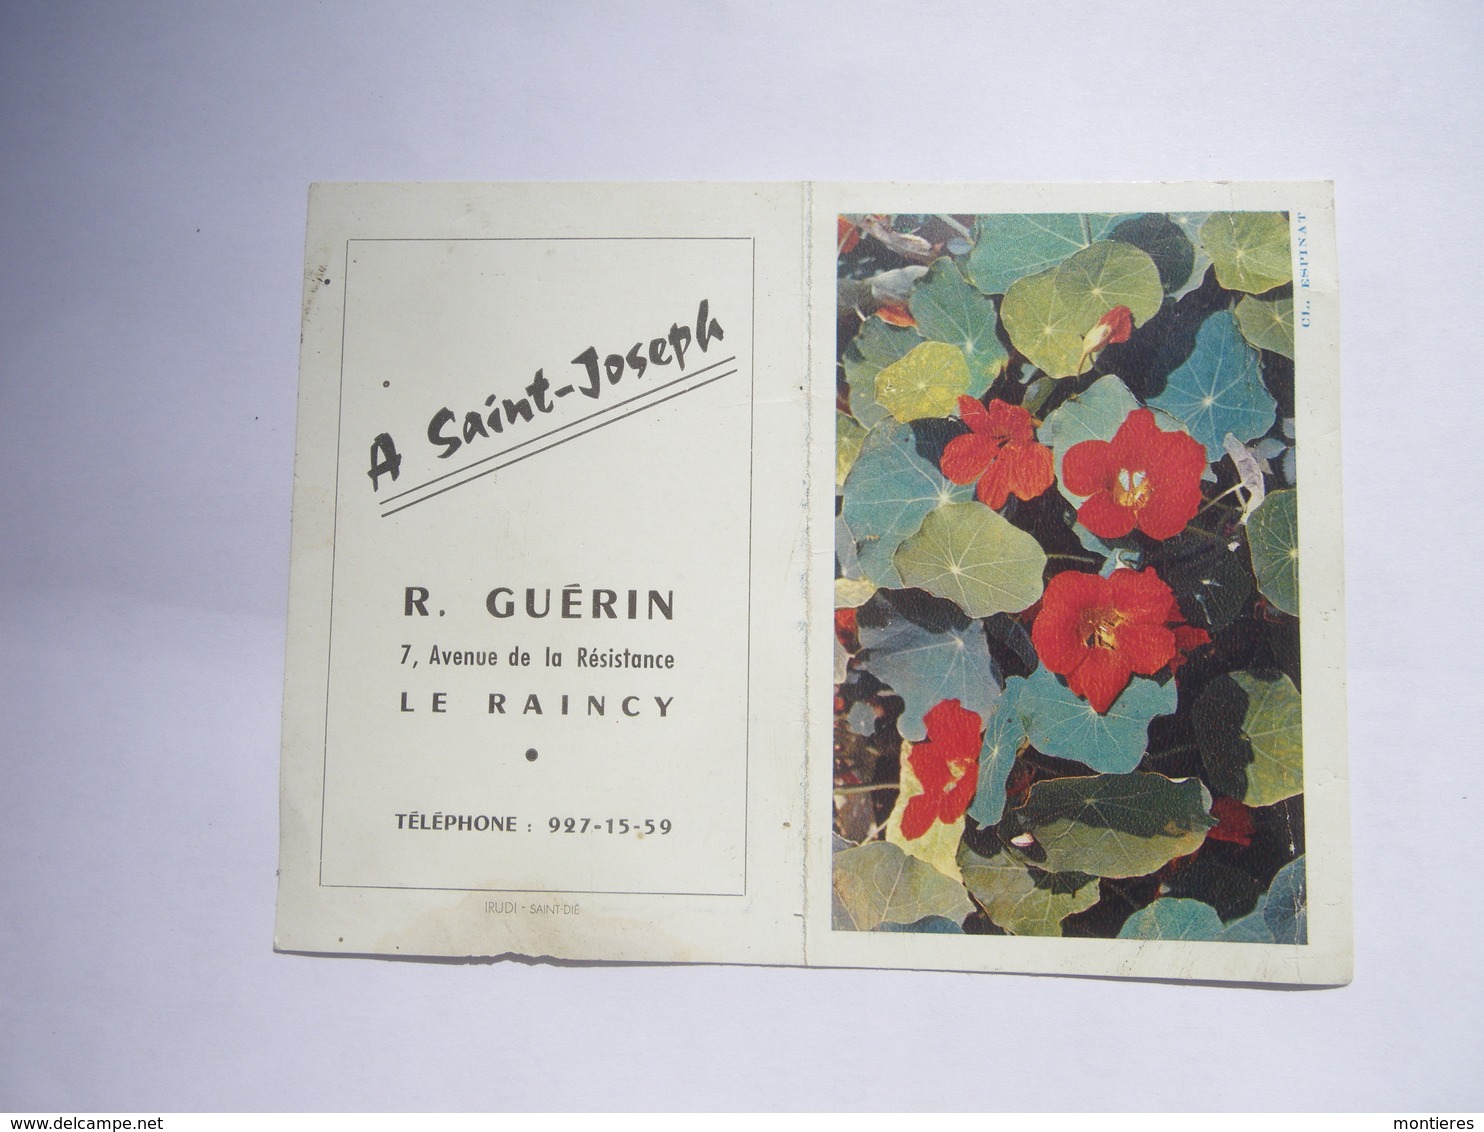 Calendrier De Poche 1963 A Saint Joseph Le Raincy ( Seine Saint Denis ) R. GUERIN 7 Av. De La Résistance - Old Professions